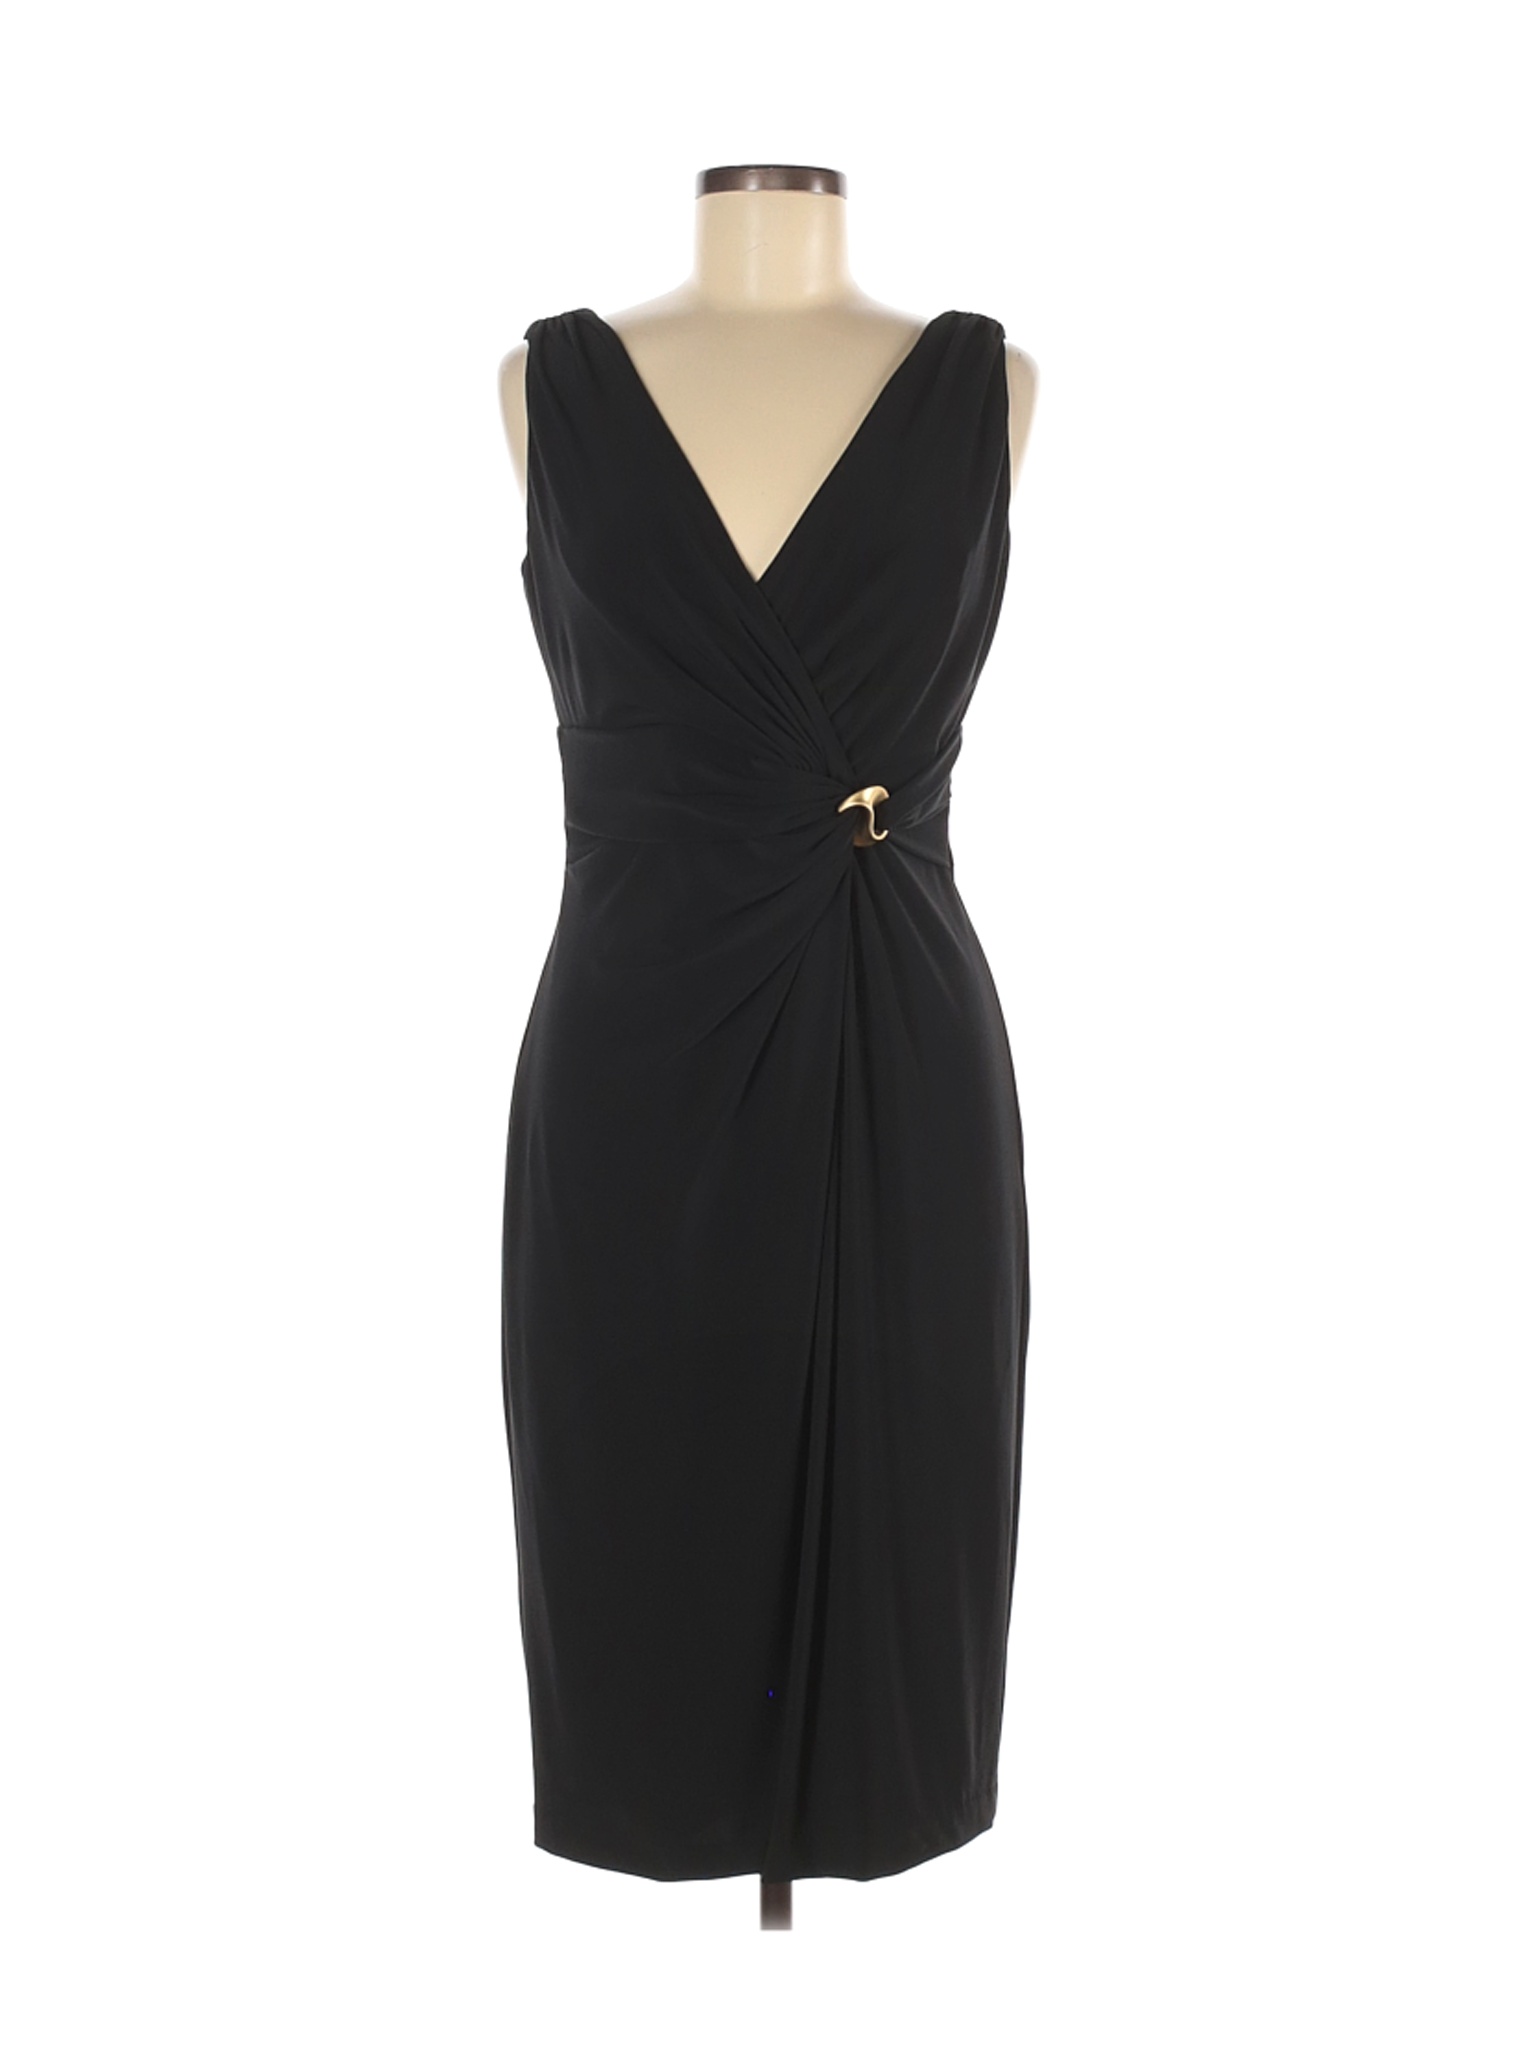 Anne Klein Women Black Cocktail Dress 8 | eBay